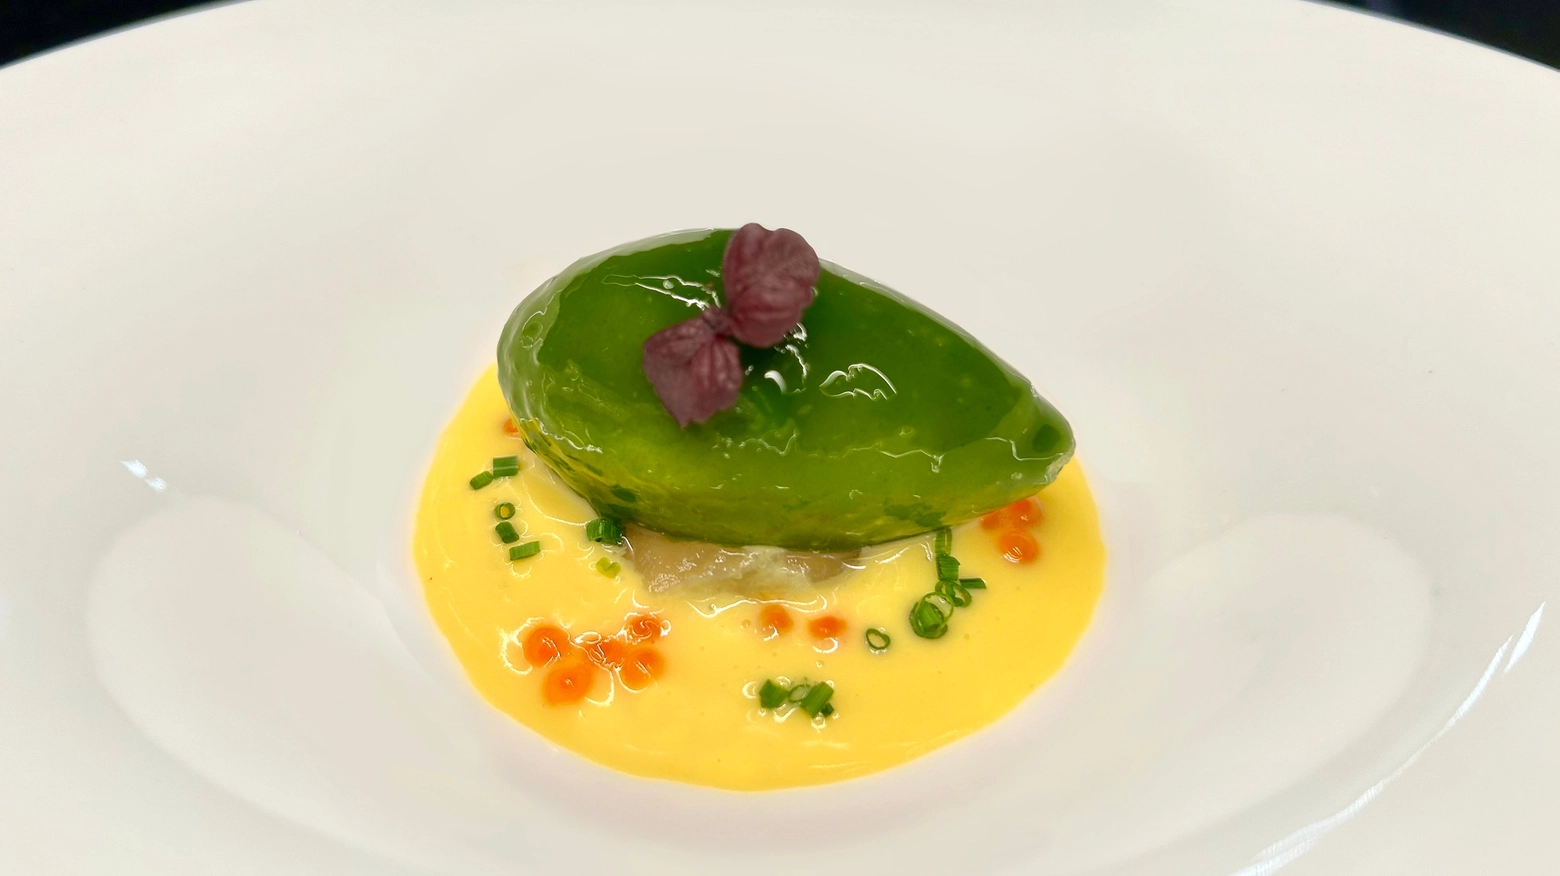 La ricetta dello chef Giacomo Sacchetto per il menu pasquale del ristorante Iris, nel cuore di Verona